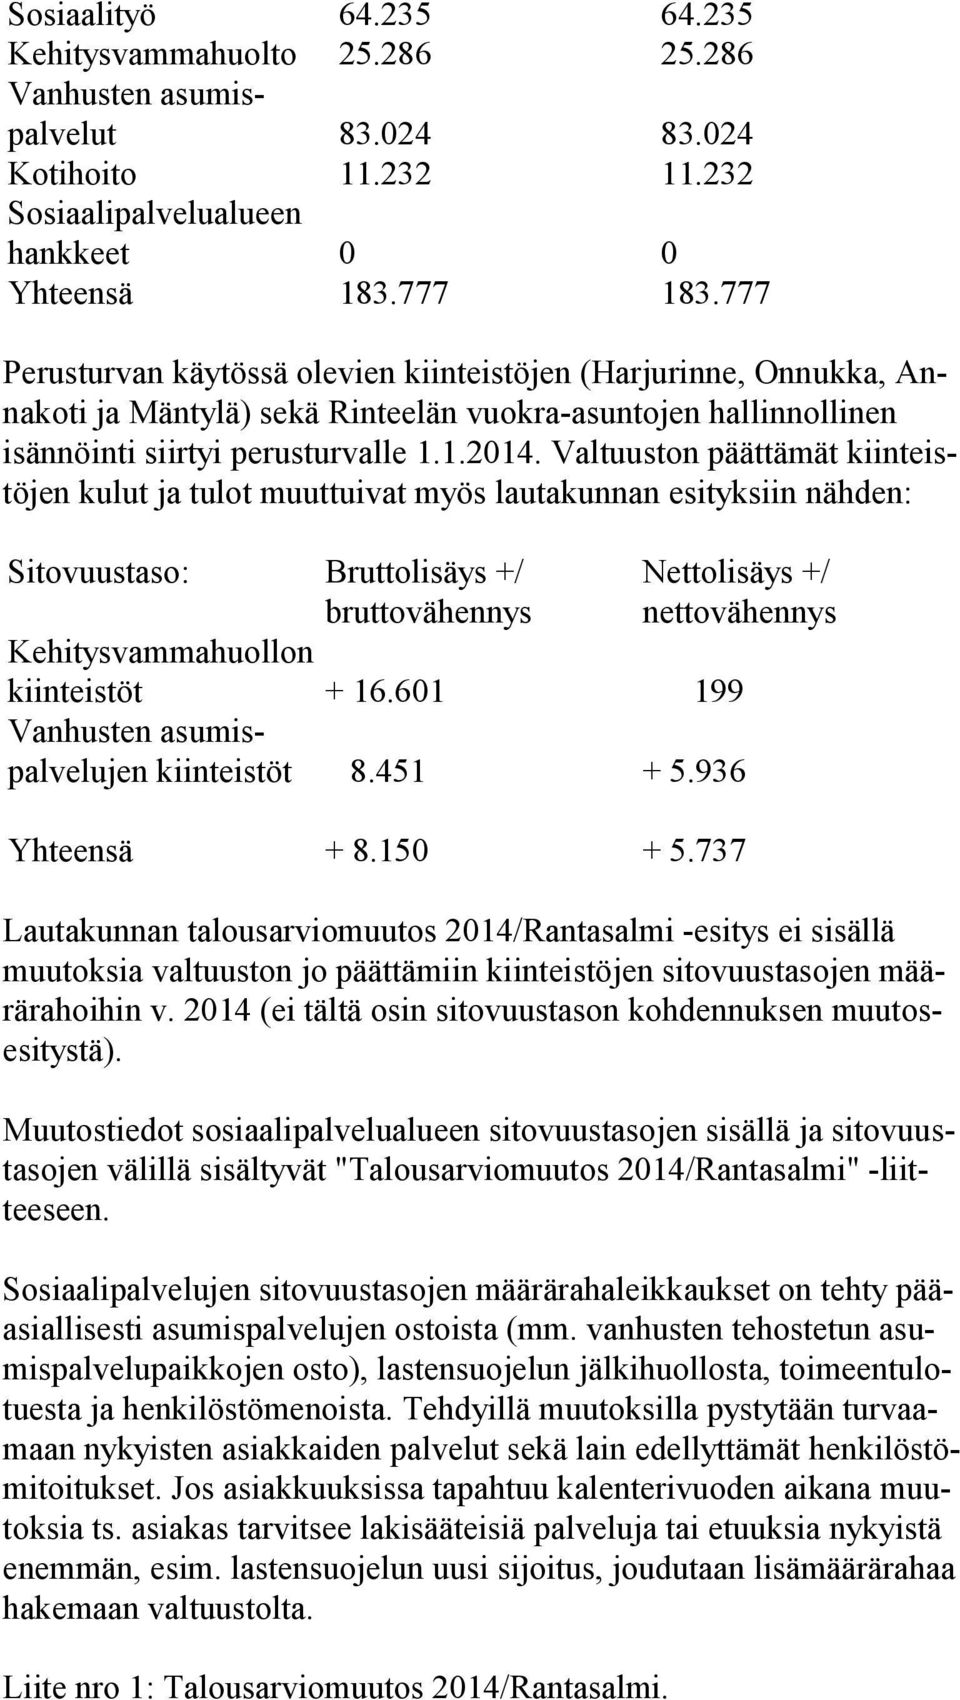 777 Perusturvan käytössä olevien kiinteistöjen (Harjurinne, Onnukka, Anna ko ti ja Mäntylä) sekä Rinteelän vuokra-asuntojen hallinnollinen isän nöin ti siirtyi perusturvalle 1.1.2014.